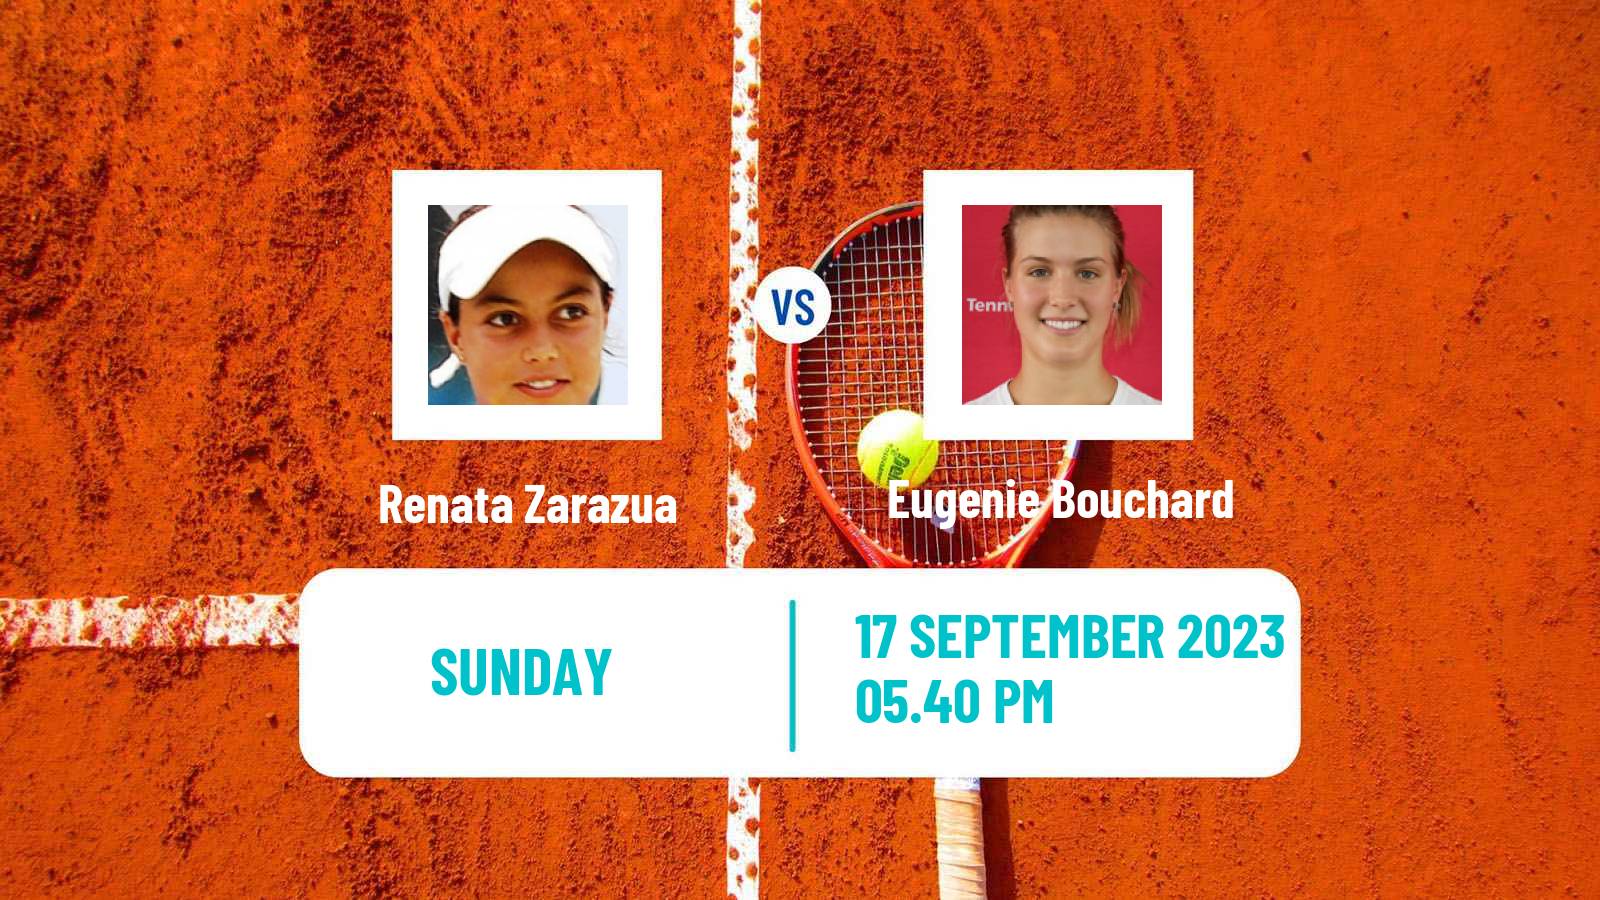 Tennis WTA Guadalajara Renata Zarazua - Eugenie Bouchard